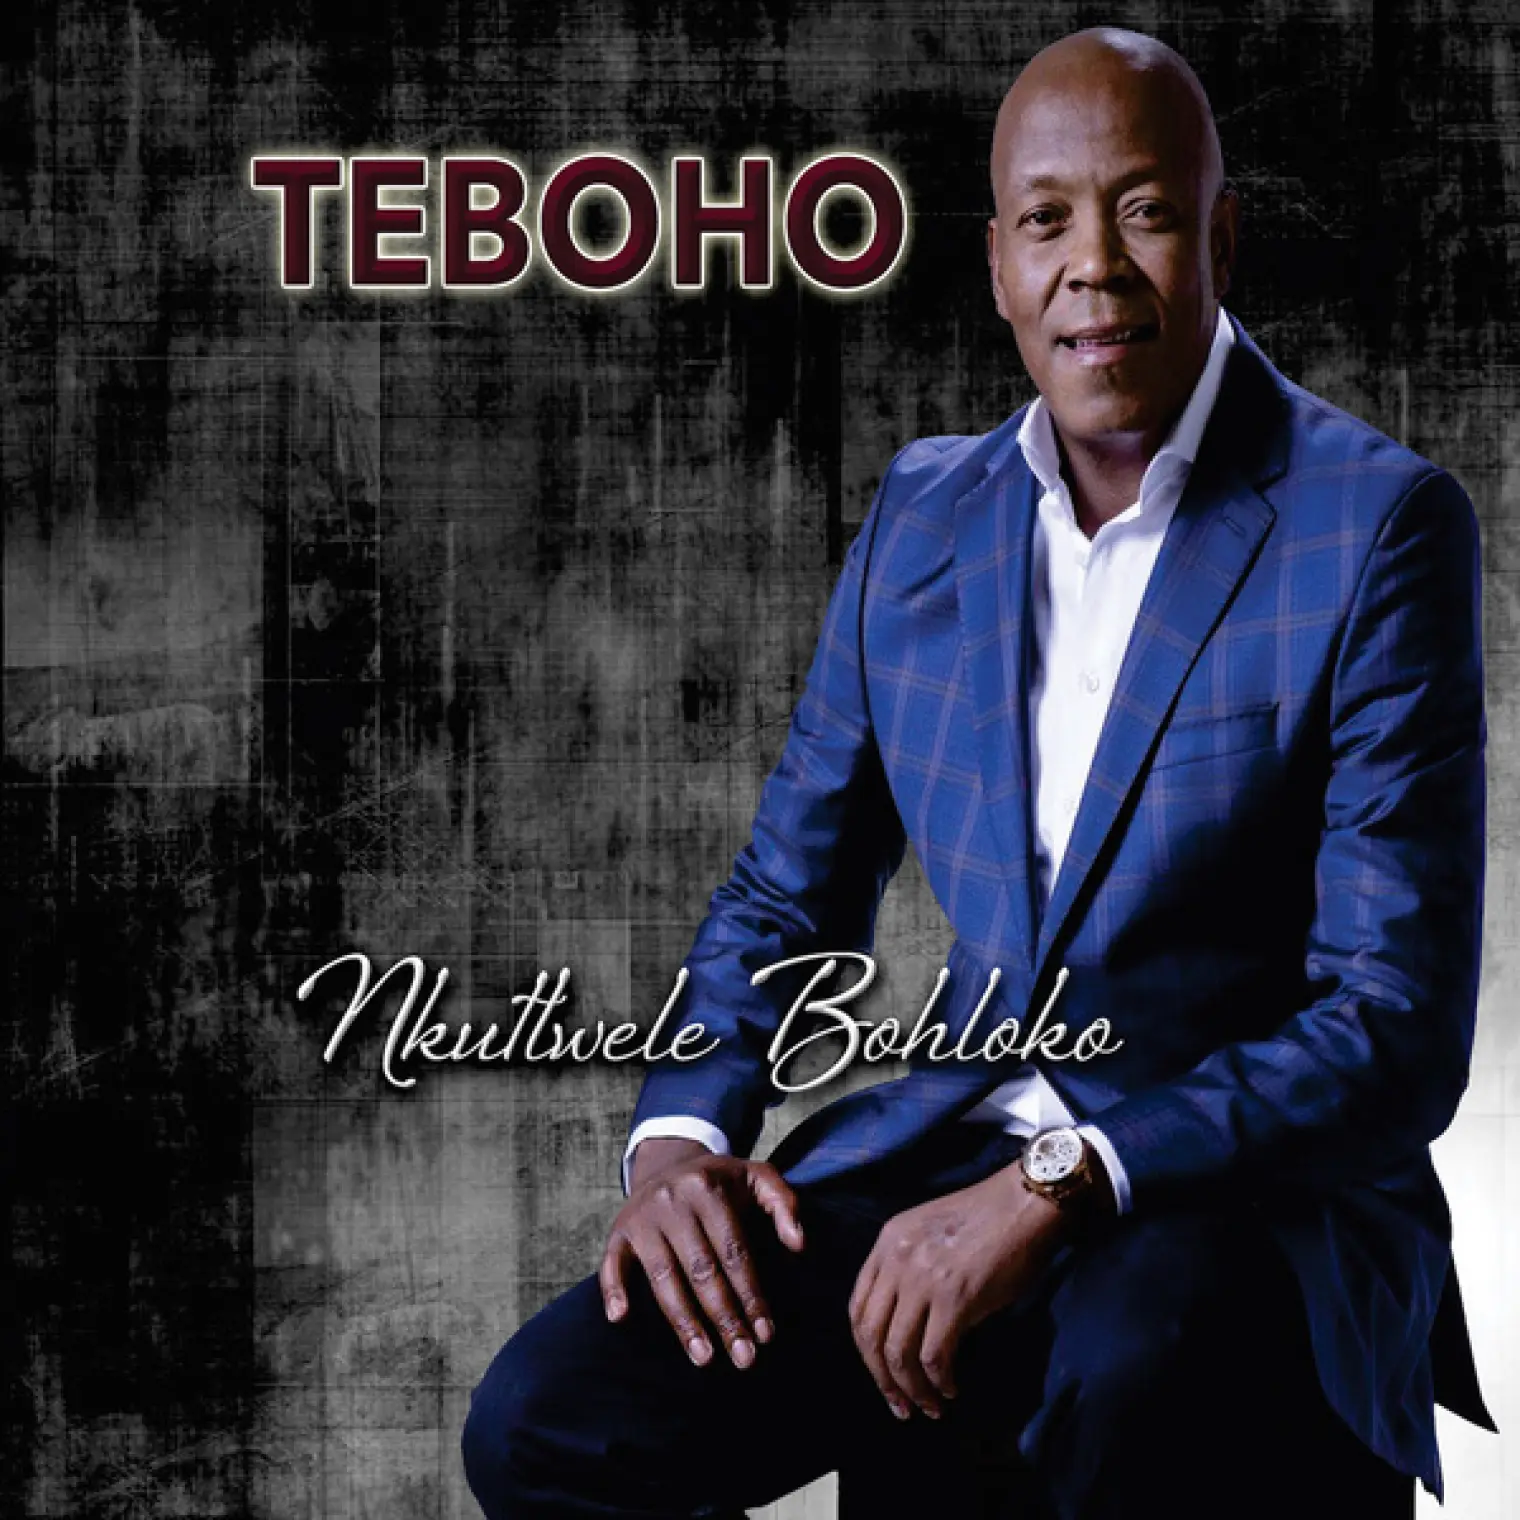 Nkutlwele Bohloko -  Teboho 